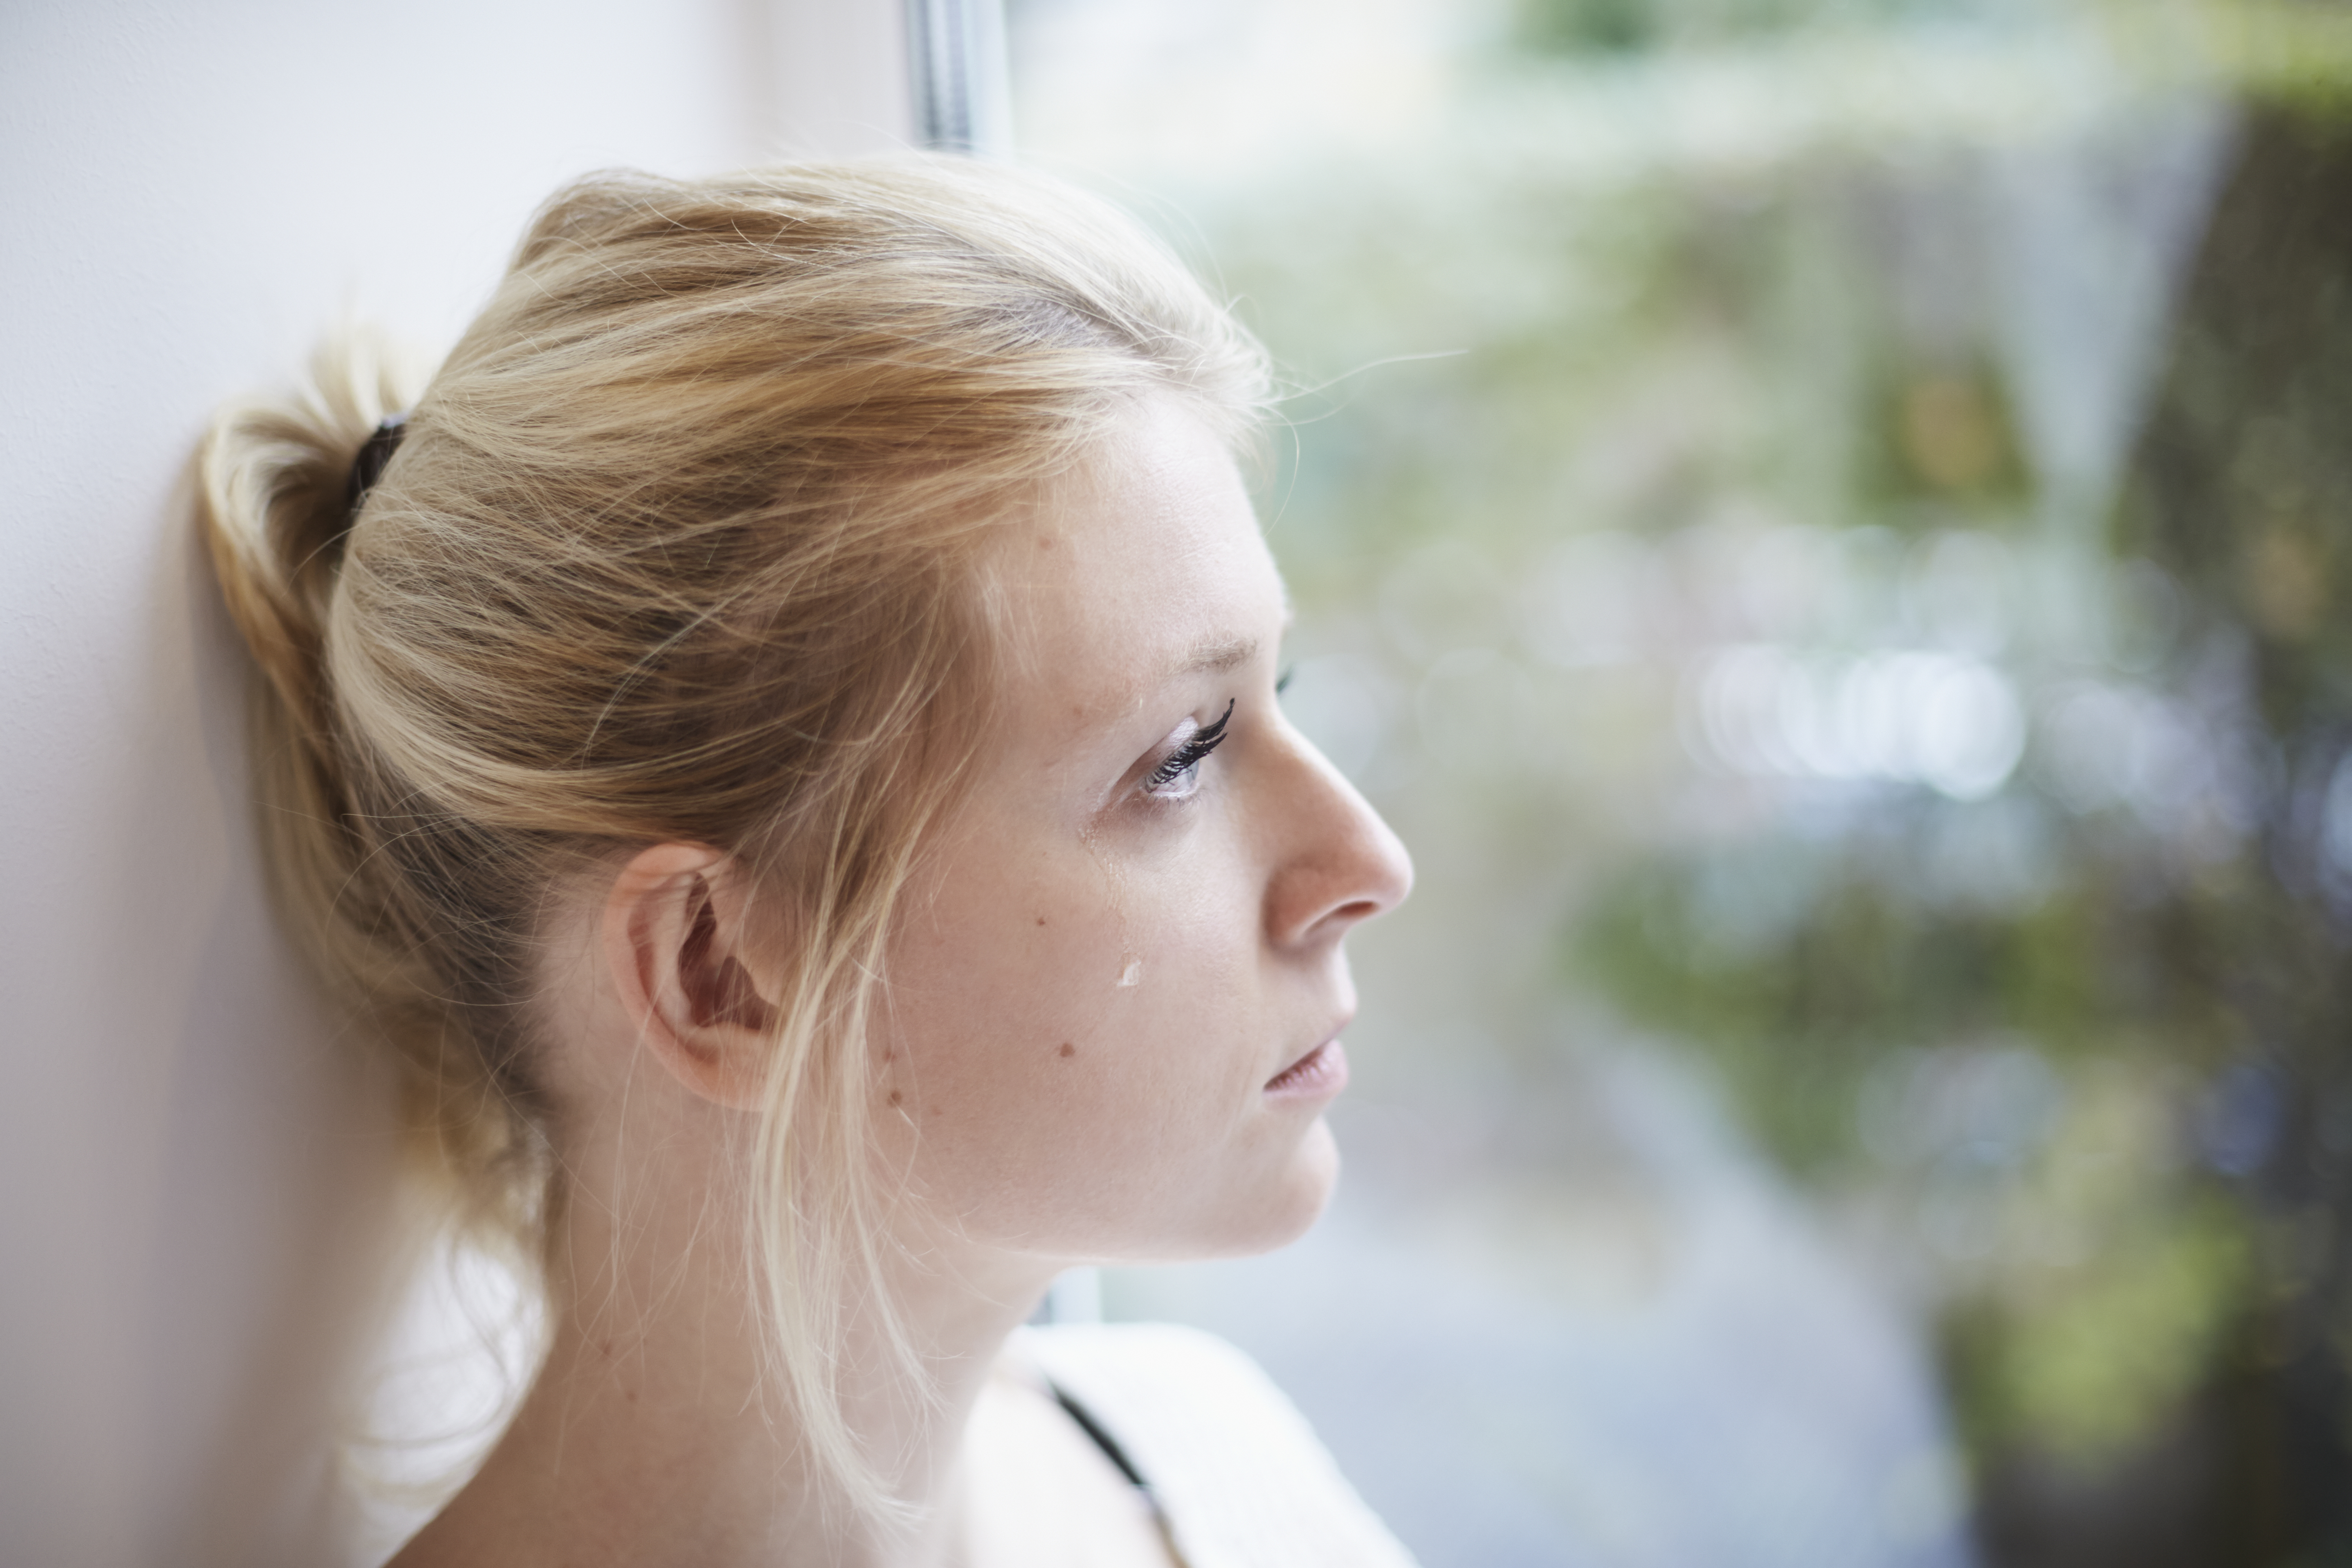 Mujer joven llorando en la ventana | Fuente: Getty Images